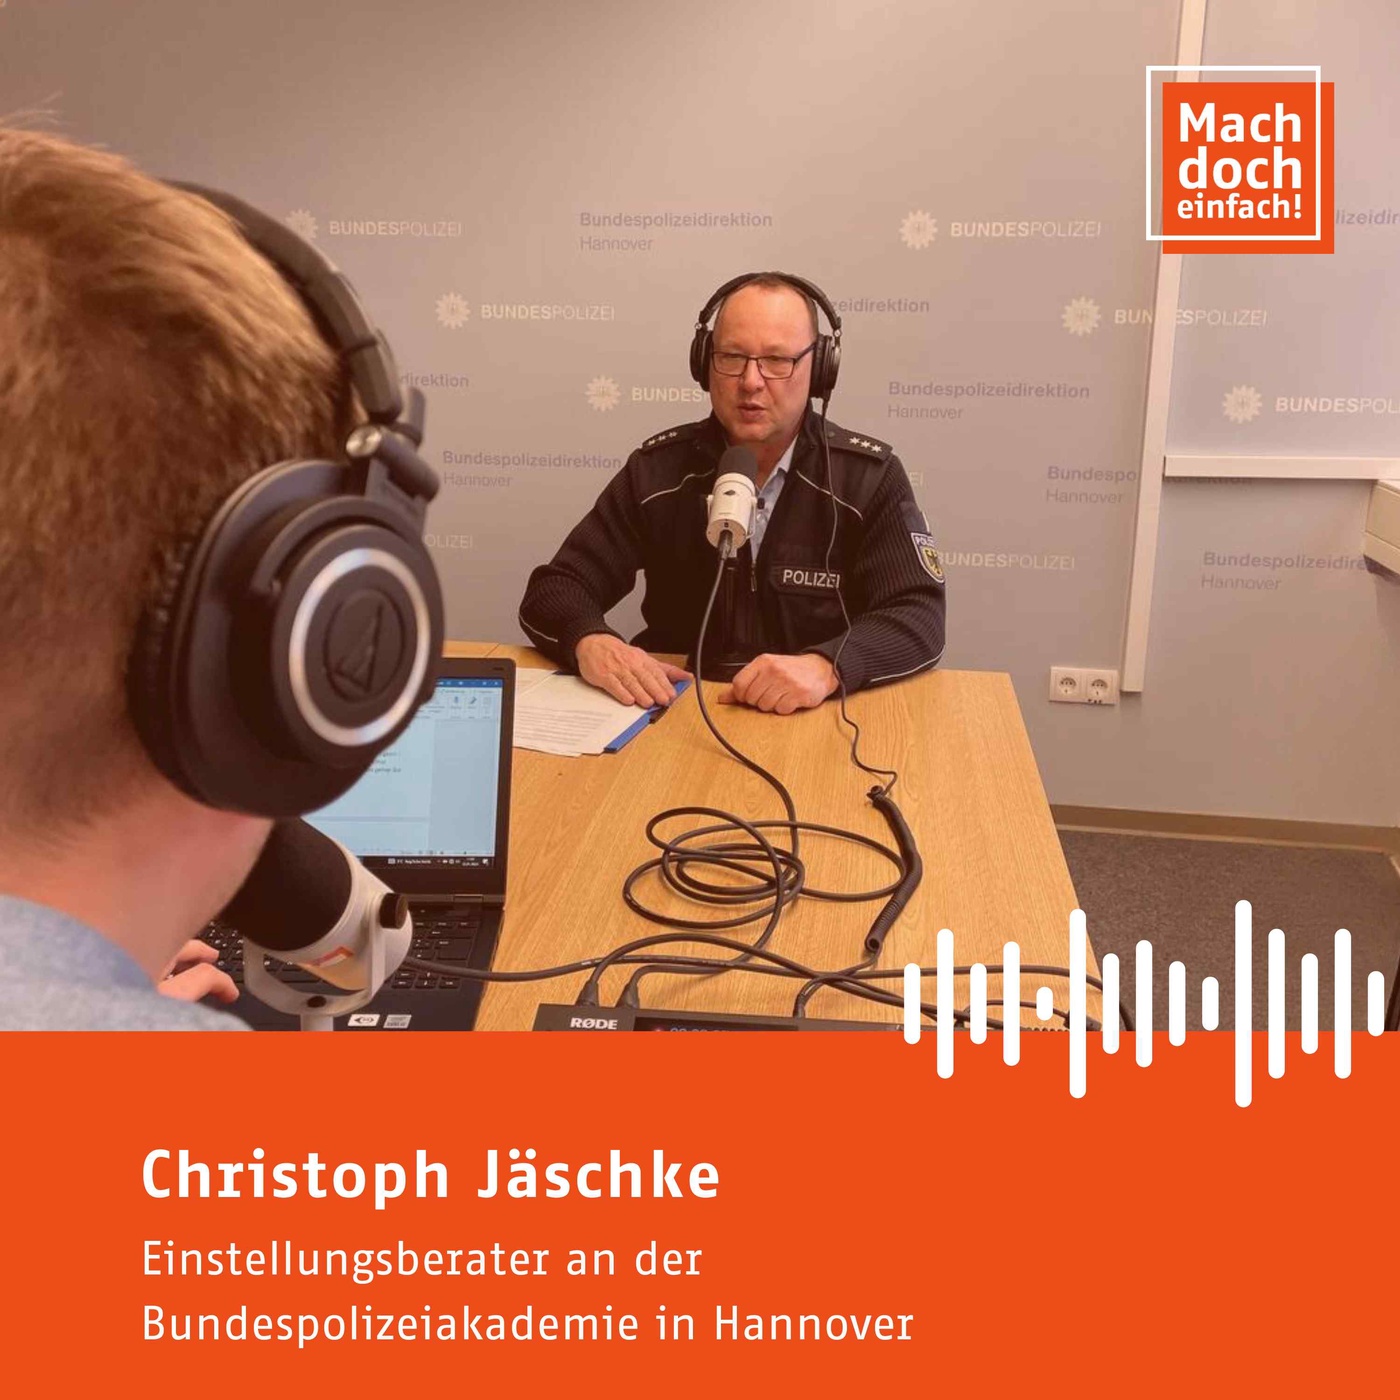 Christoph Jäschke: Wir müssen eine Menge Leute für uns gewinnen und es wird immer schwieriger